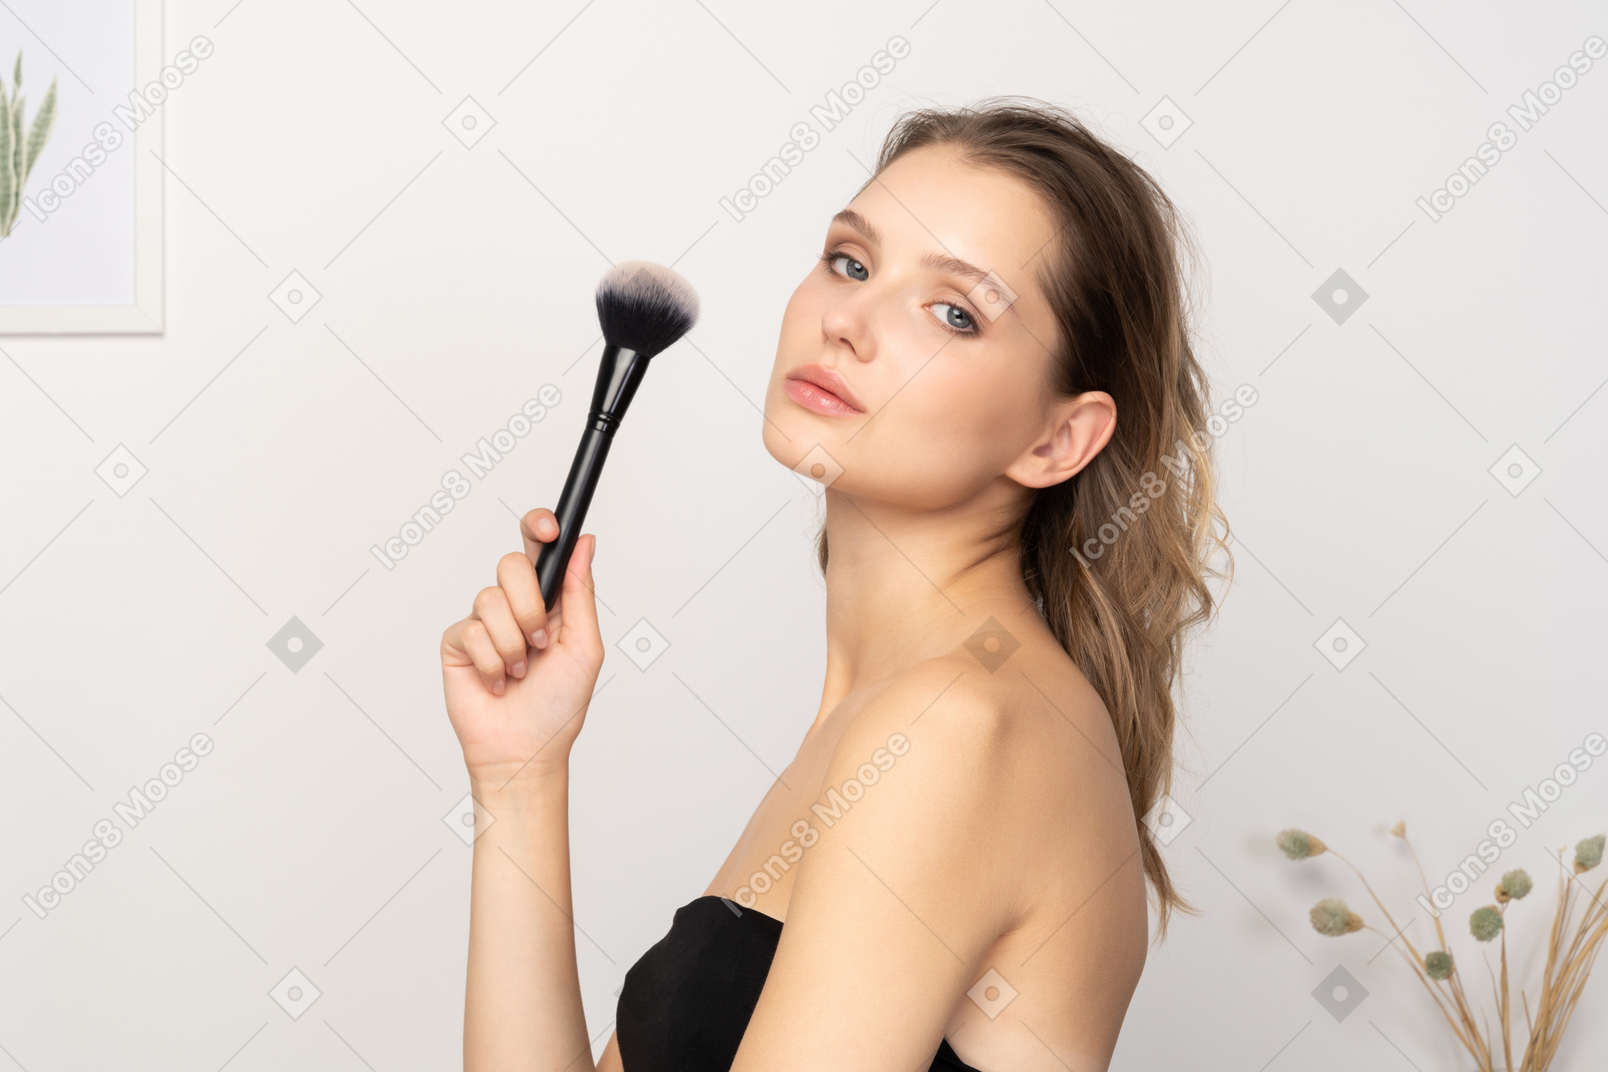 Seitenansicht einer sinnlichen jungen frau, die einen make-up-pinsel hält und in die kamera schaut